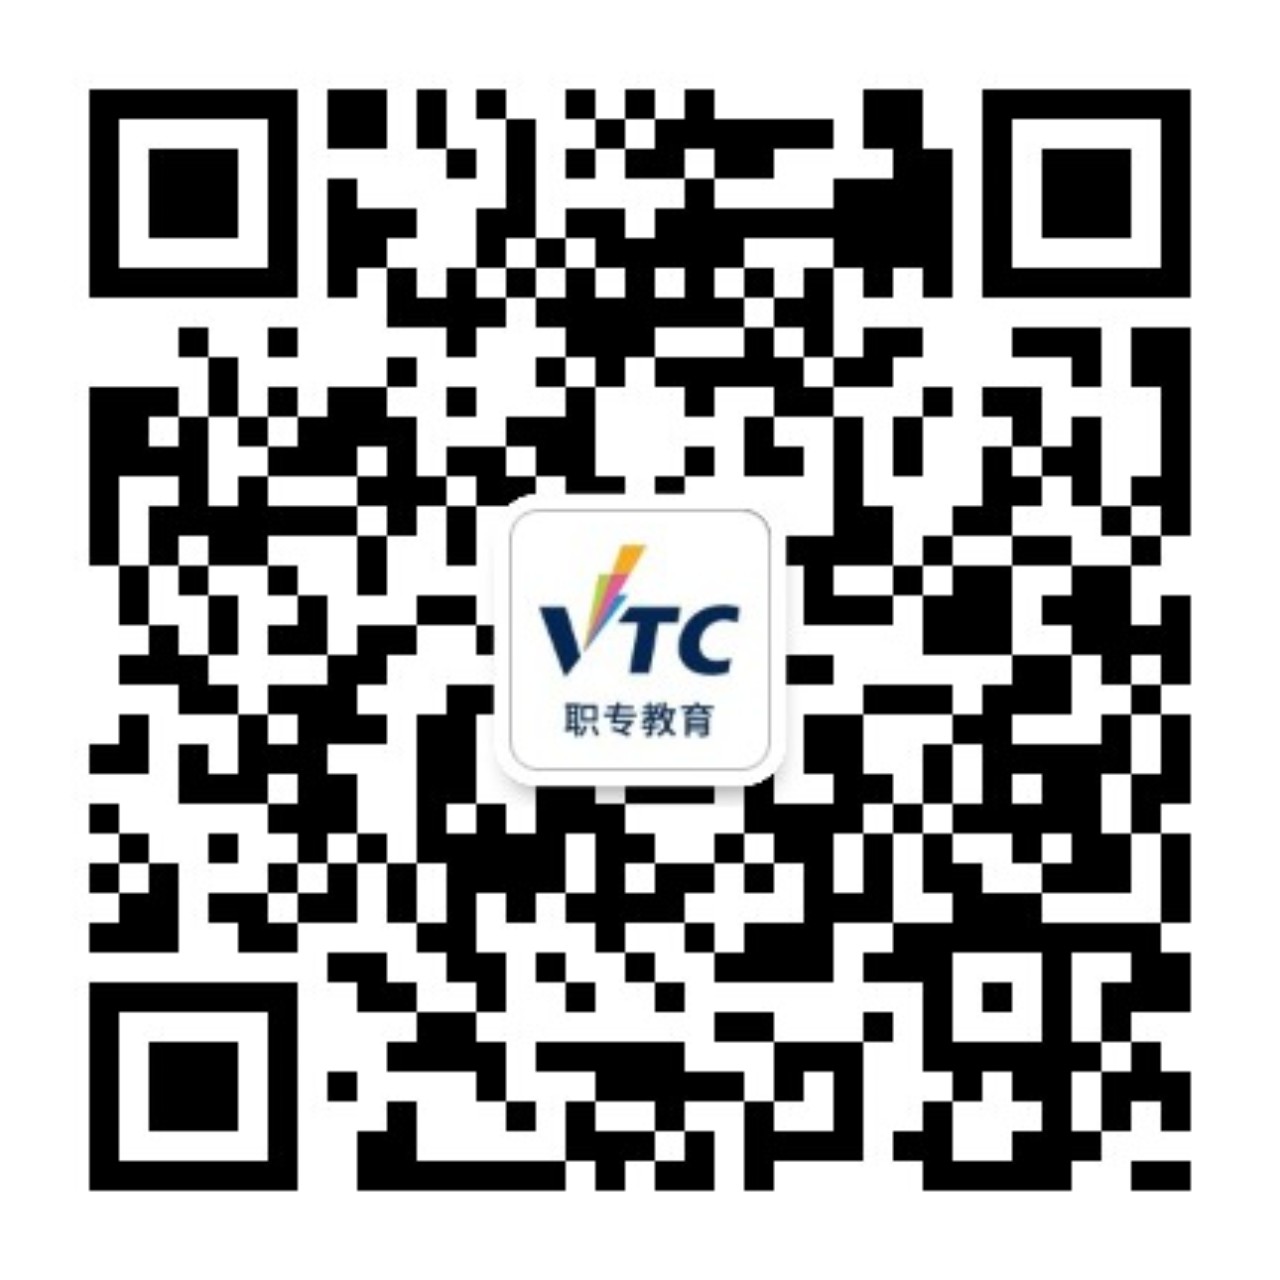 香港VTC職專教育資訊平台微信號